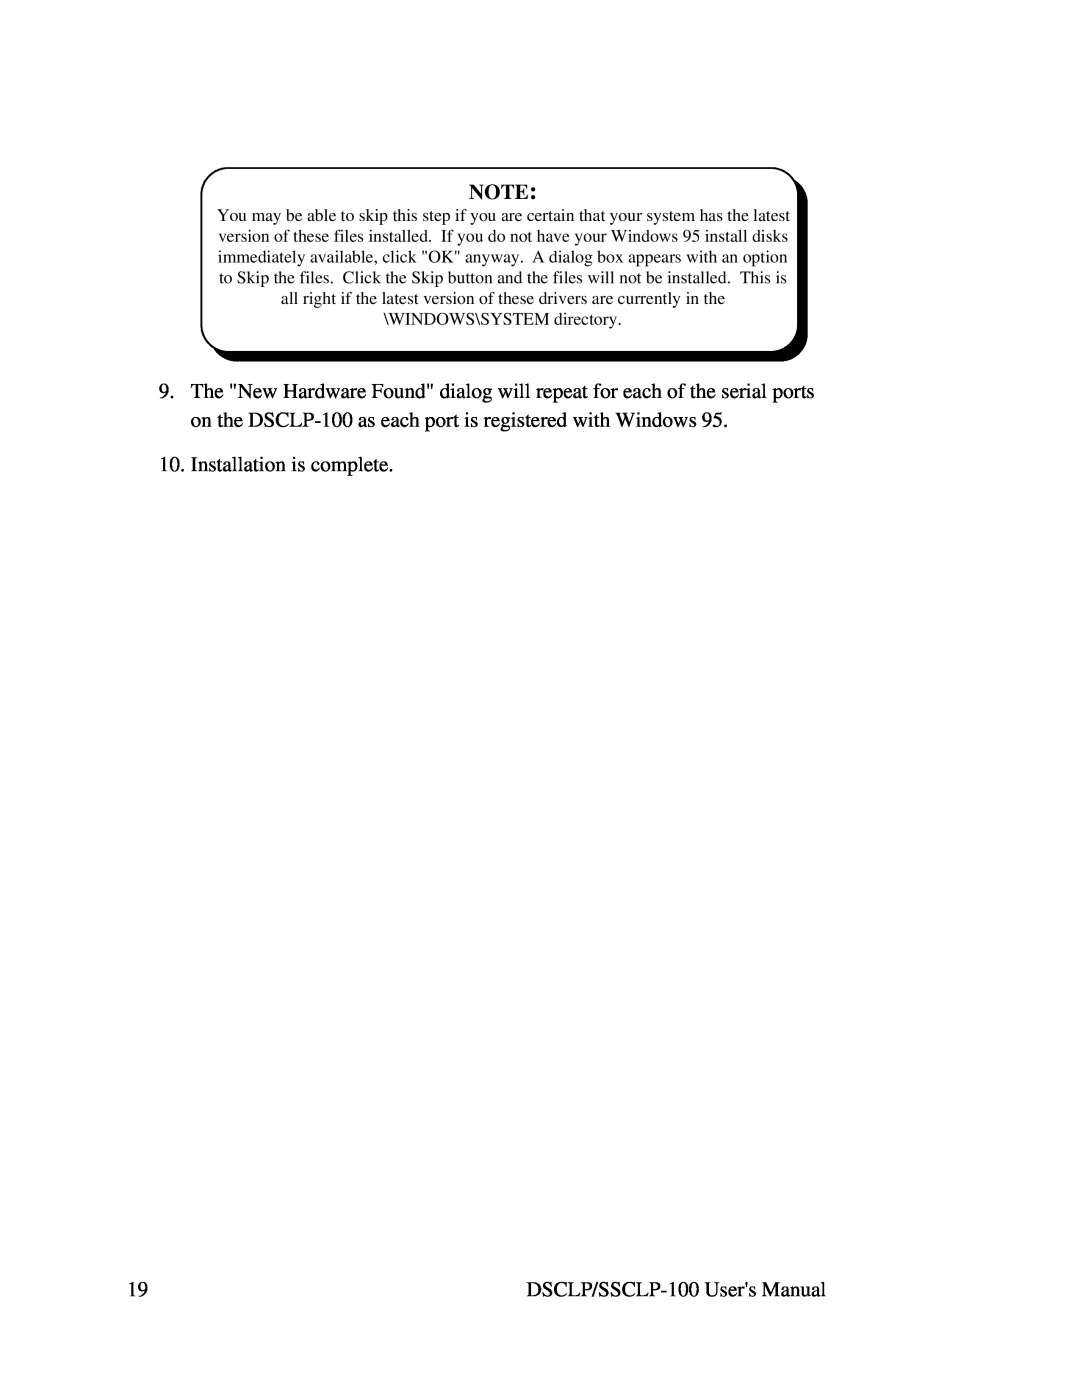 Quatech DSCLP/SSCLP-100 user manual 